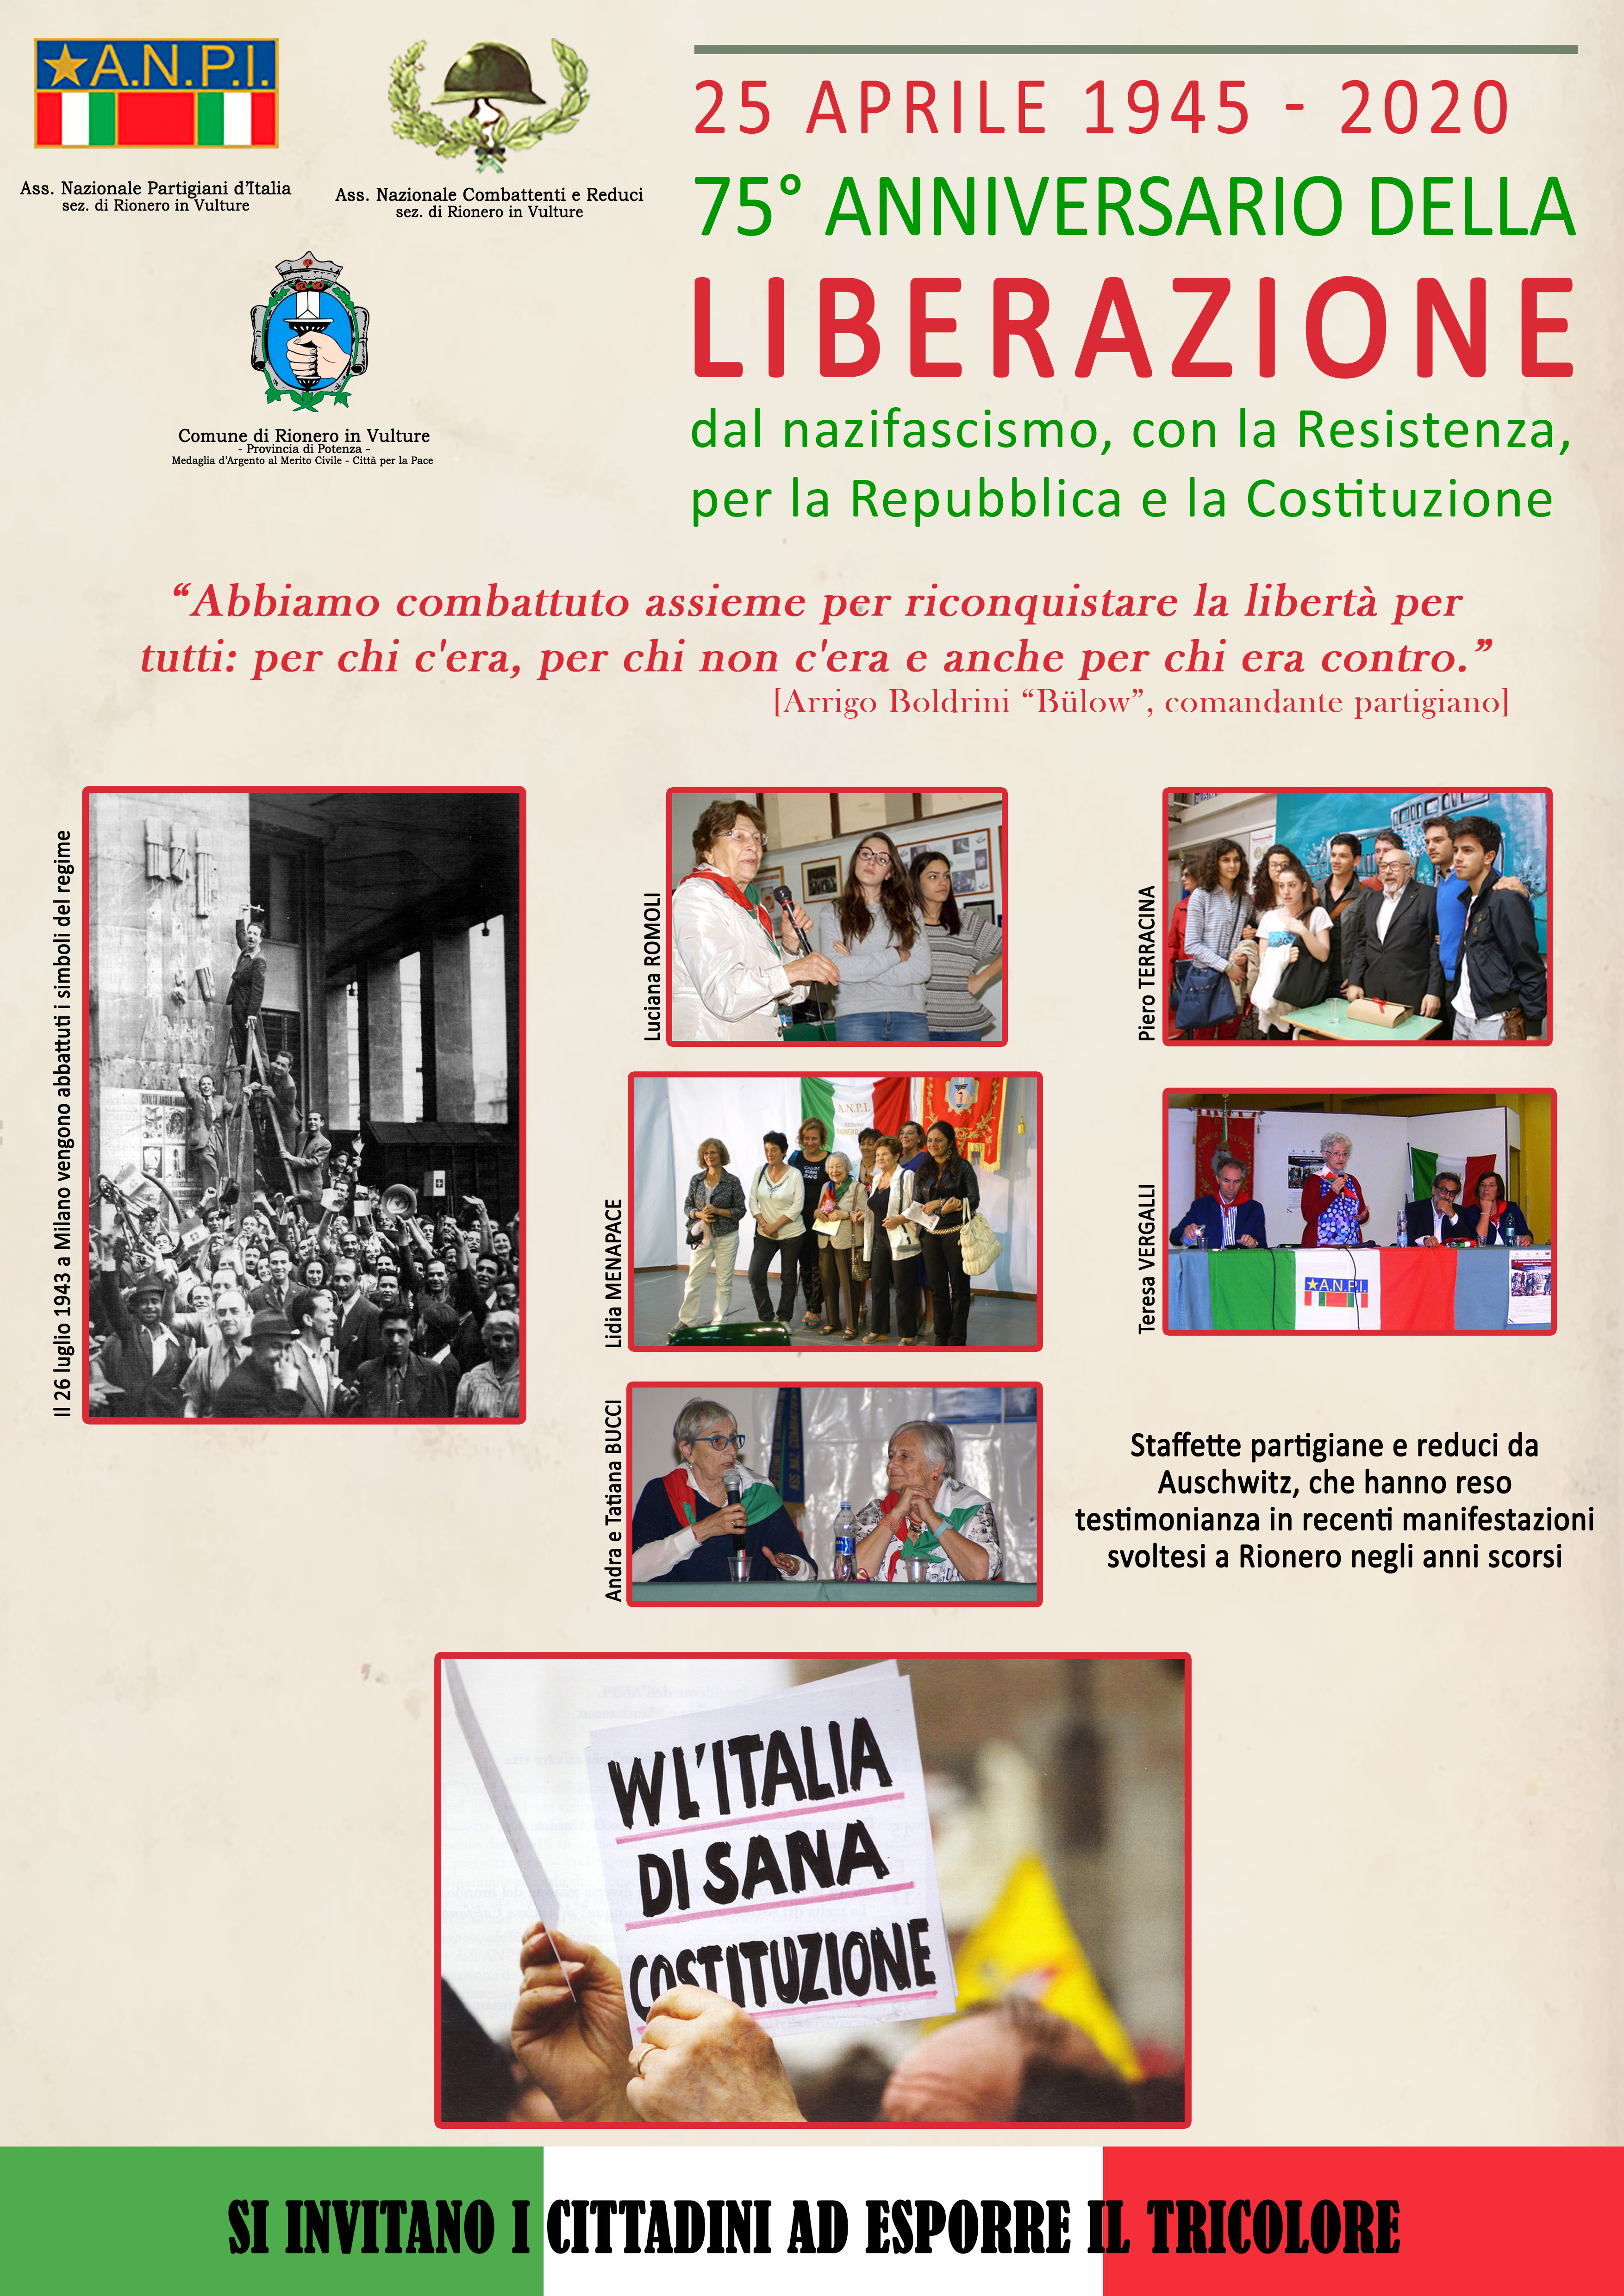 25 aprile 2020. 75° anniversario della Liberazione dell'Italia dal nazifascismo